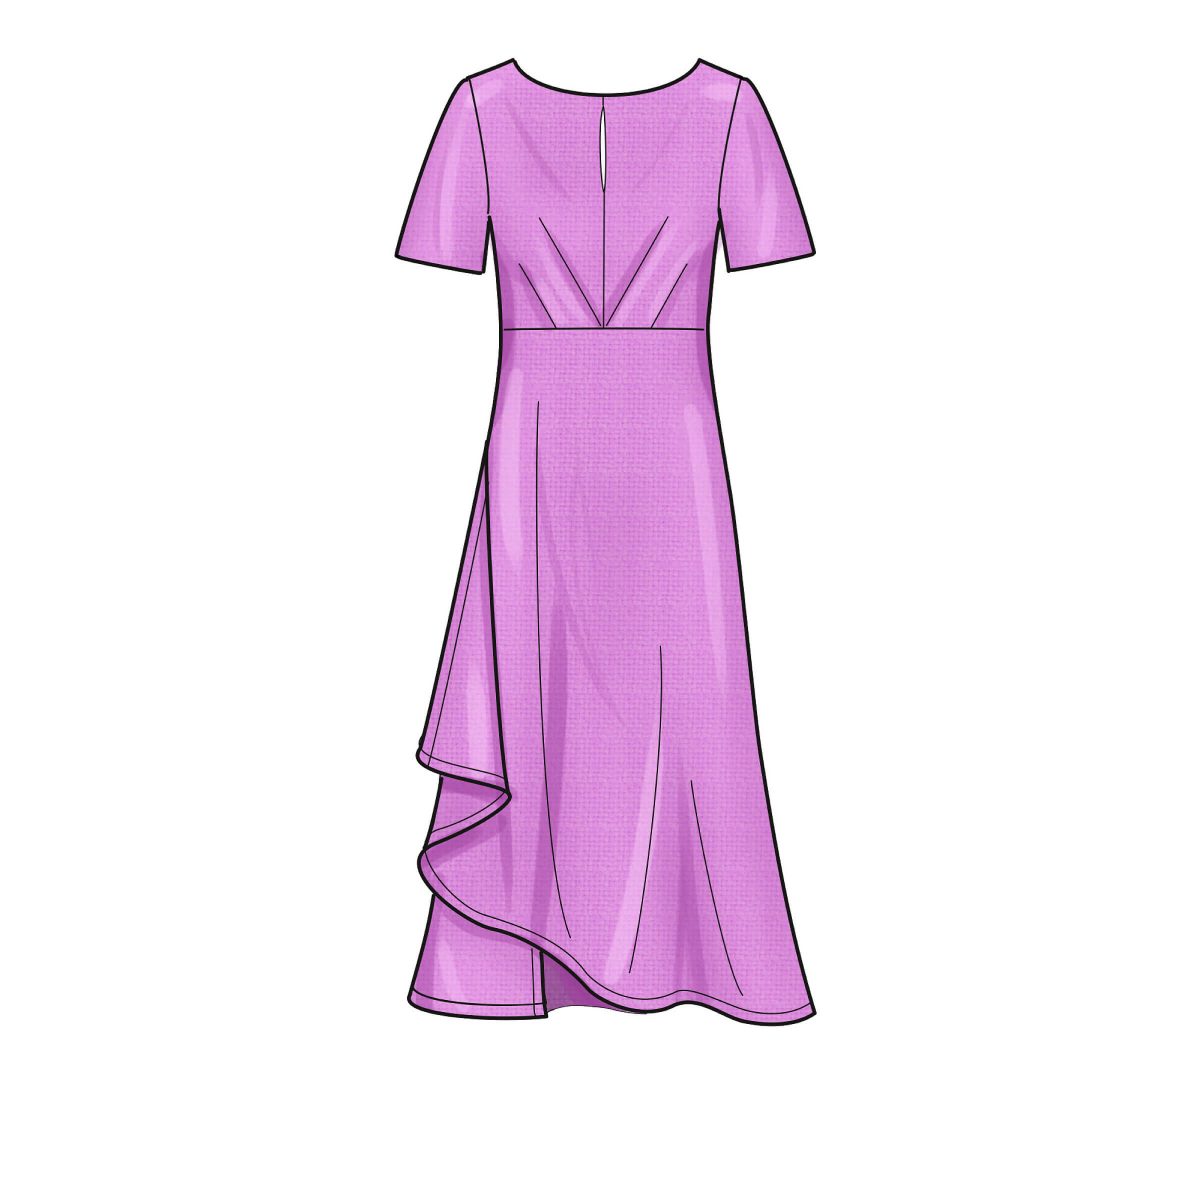 New Look Sewing Pattern N6655 Misses' Dresses